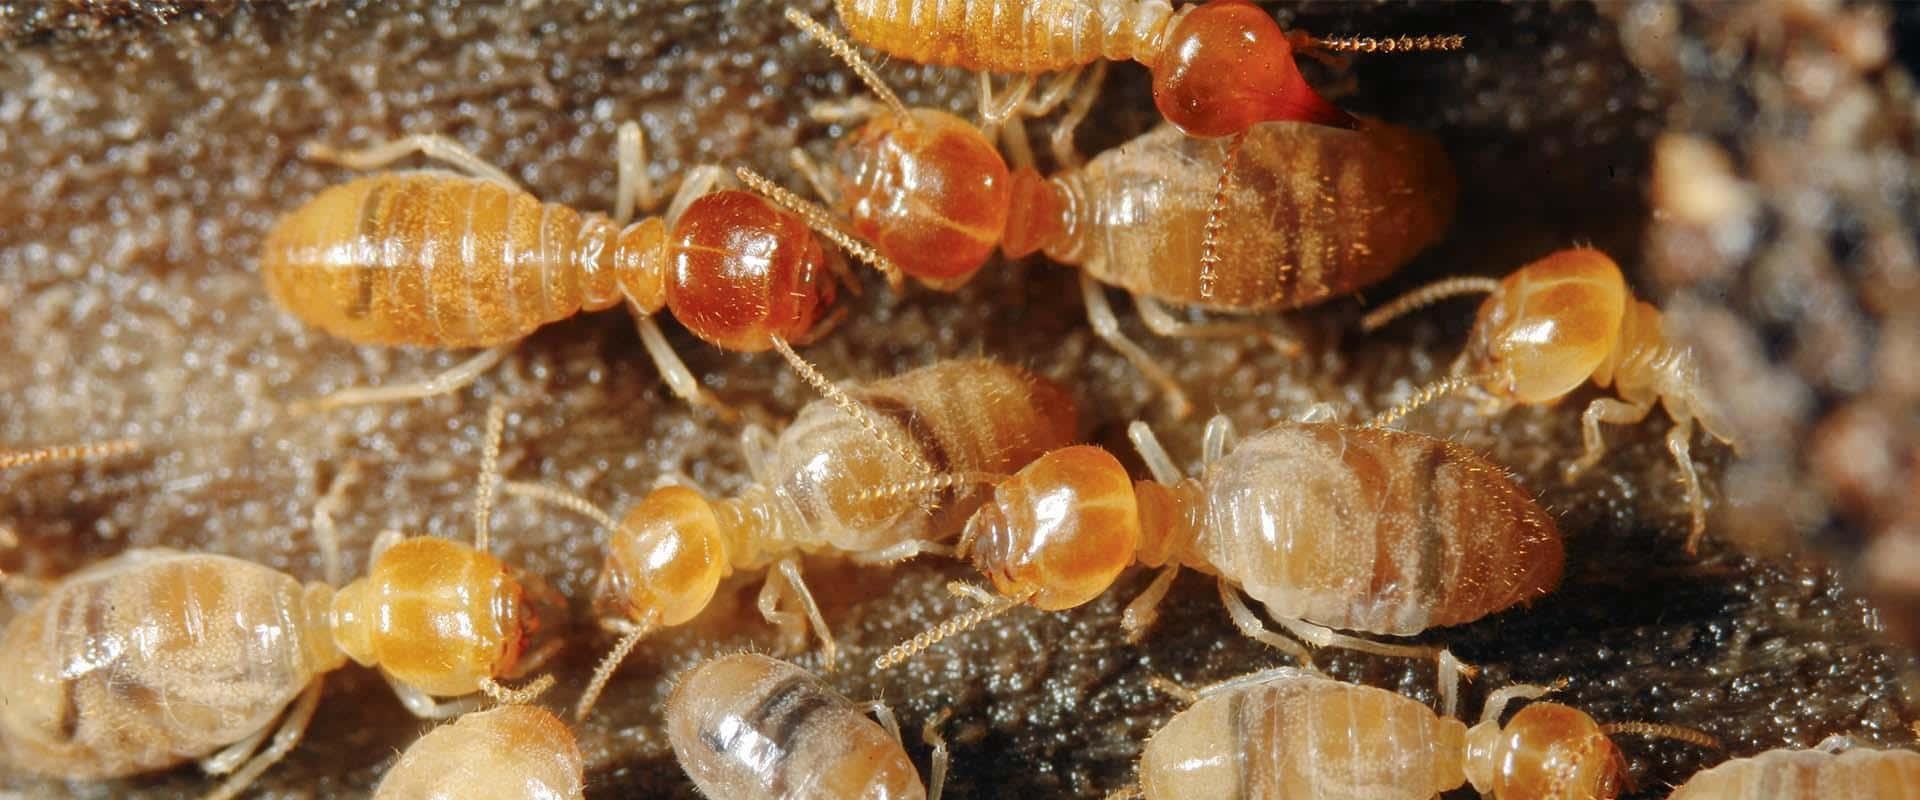 pile of termites